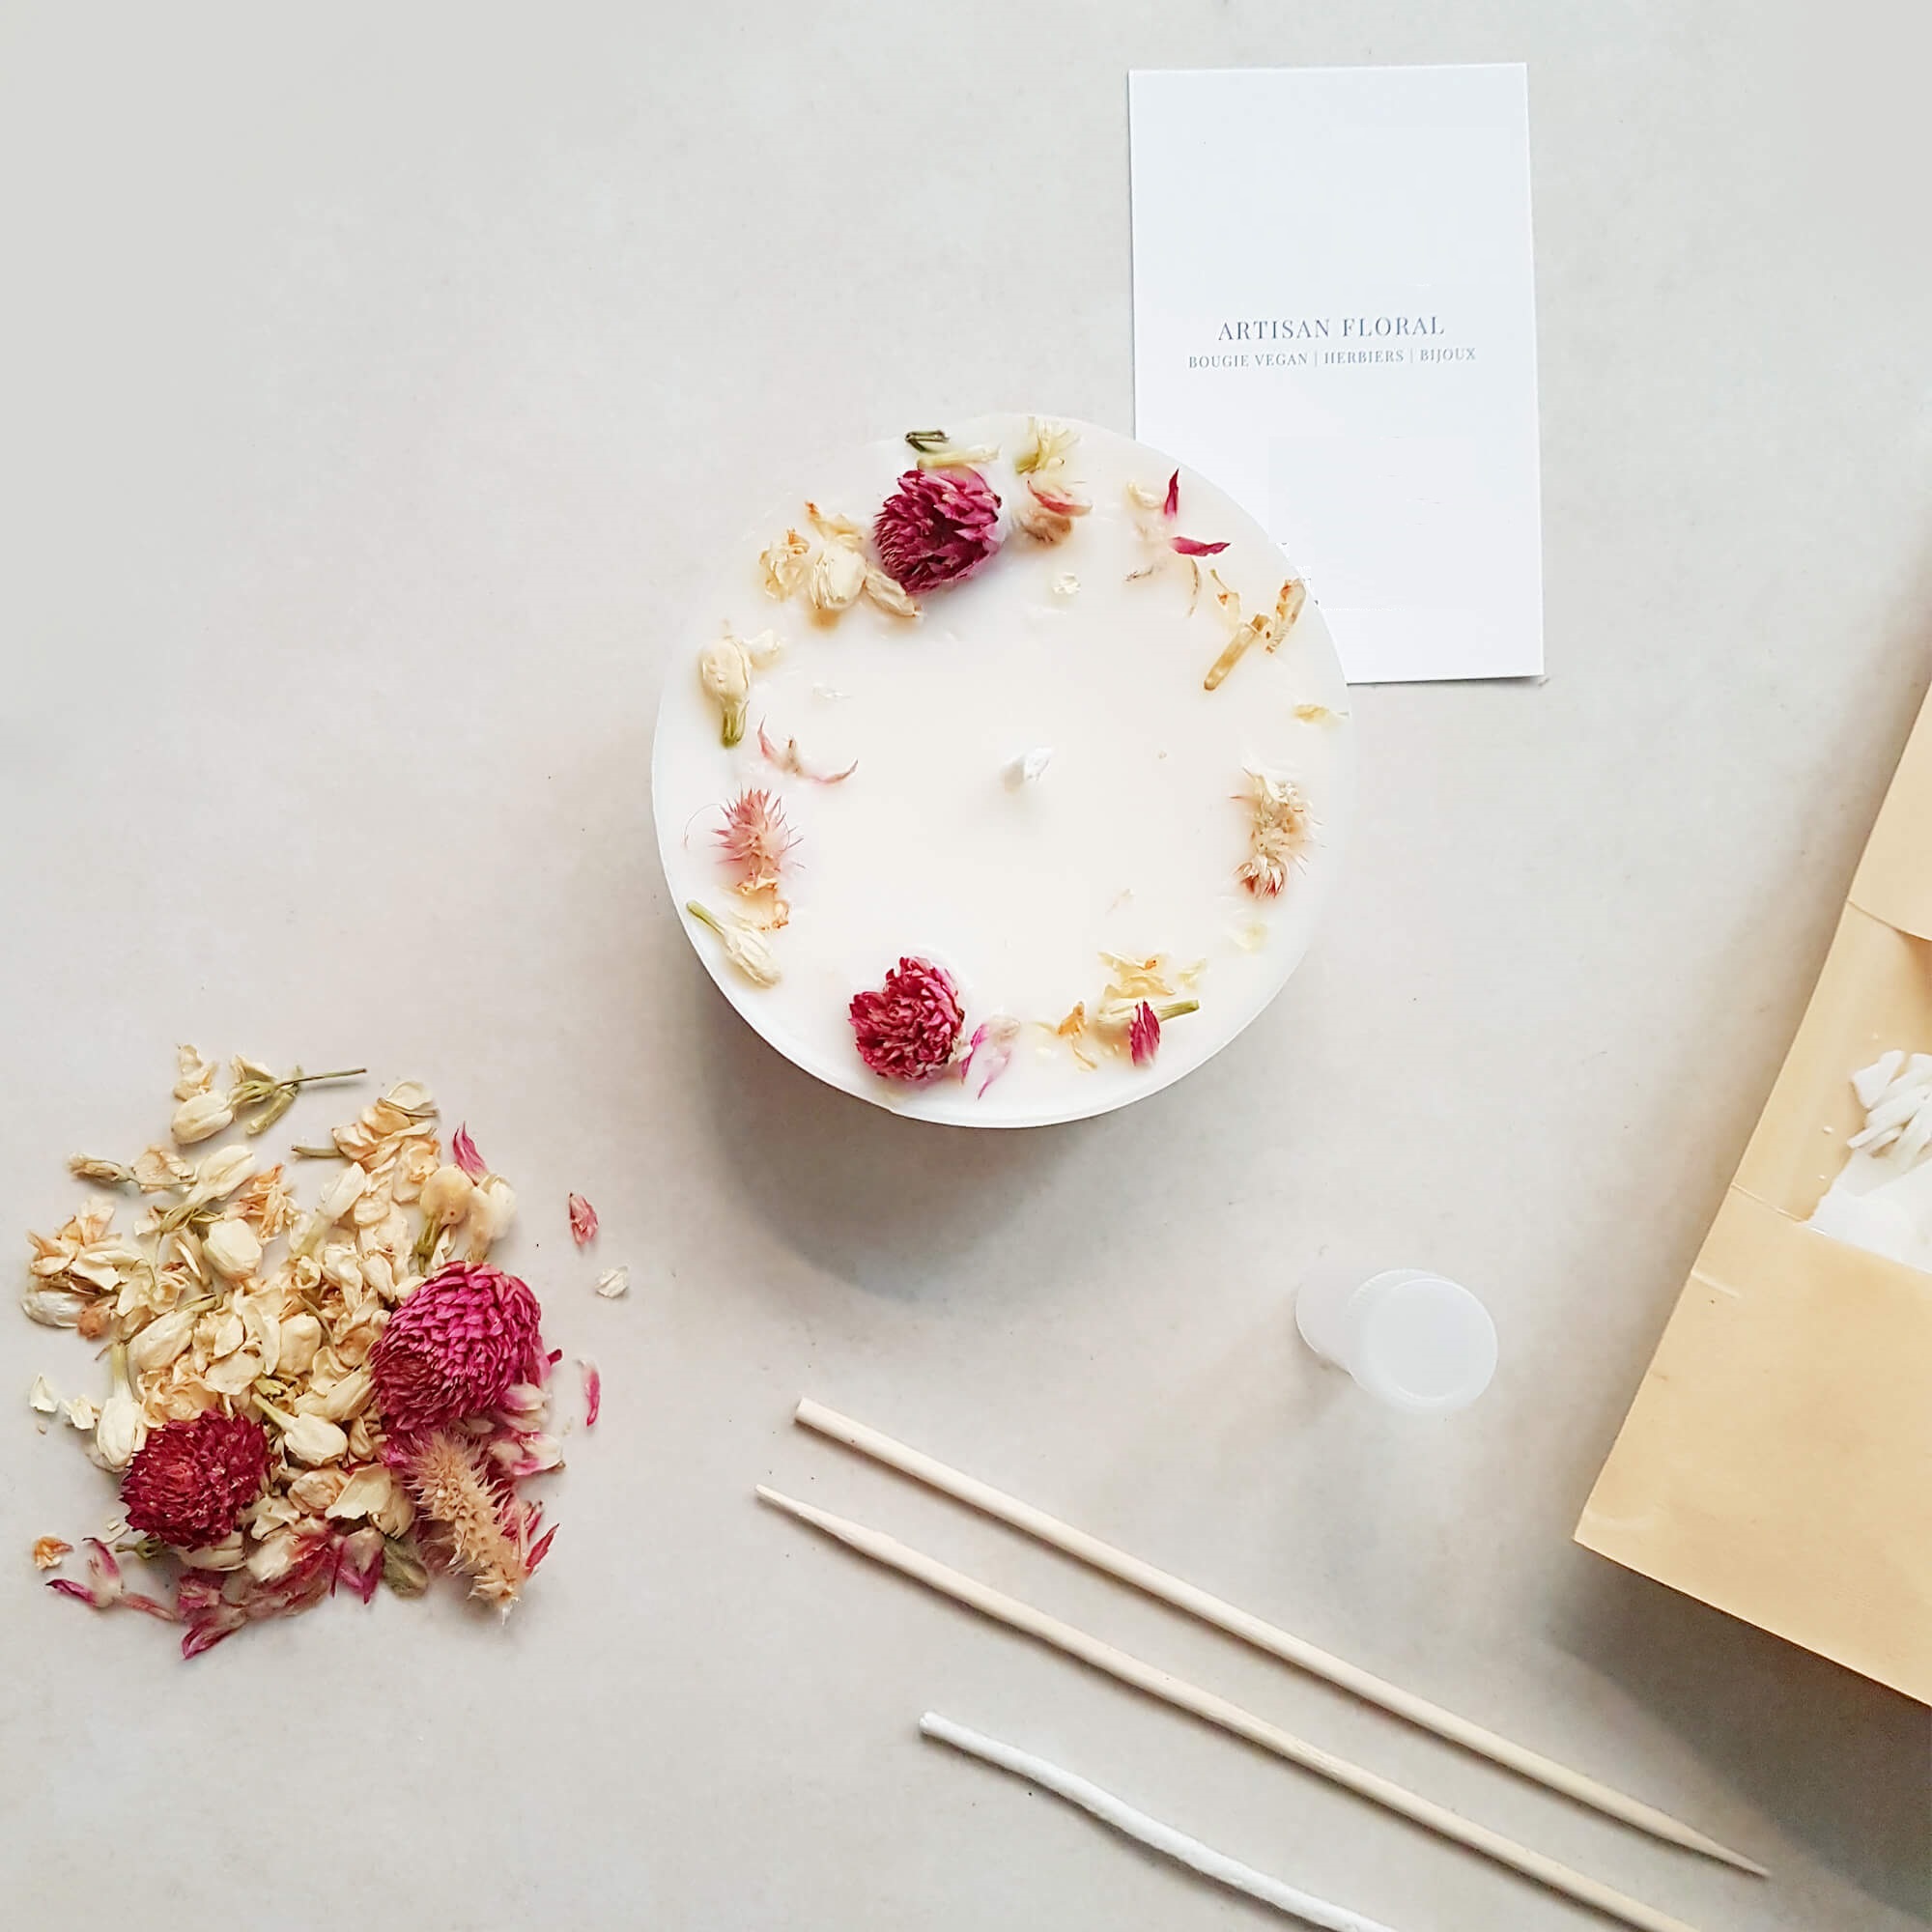 Bộ dụng cụ tự tạo nến DIY - Nến thơm sáp ong với hoa cúc bách nhật và hoa nhài 150ml